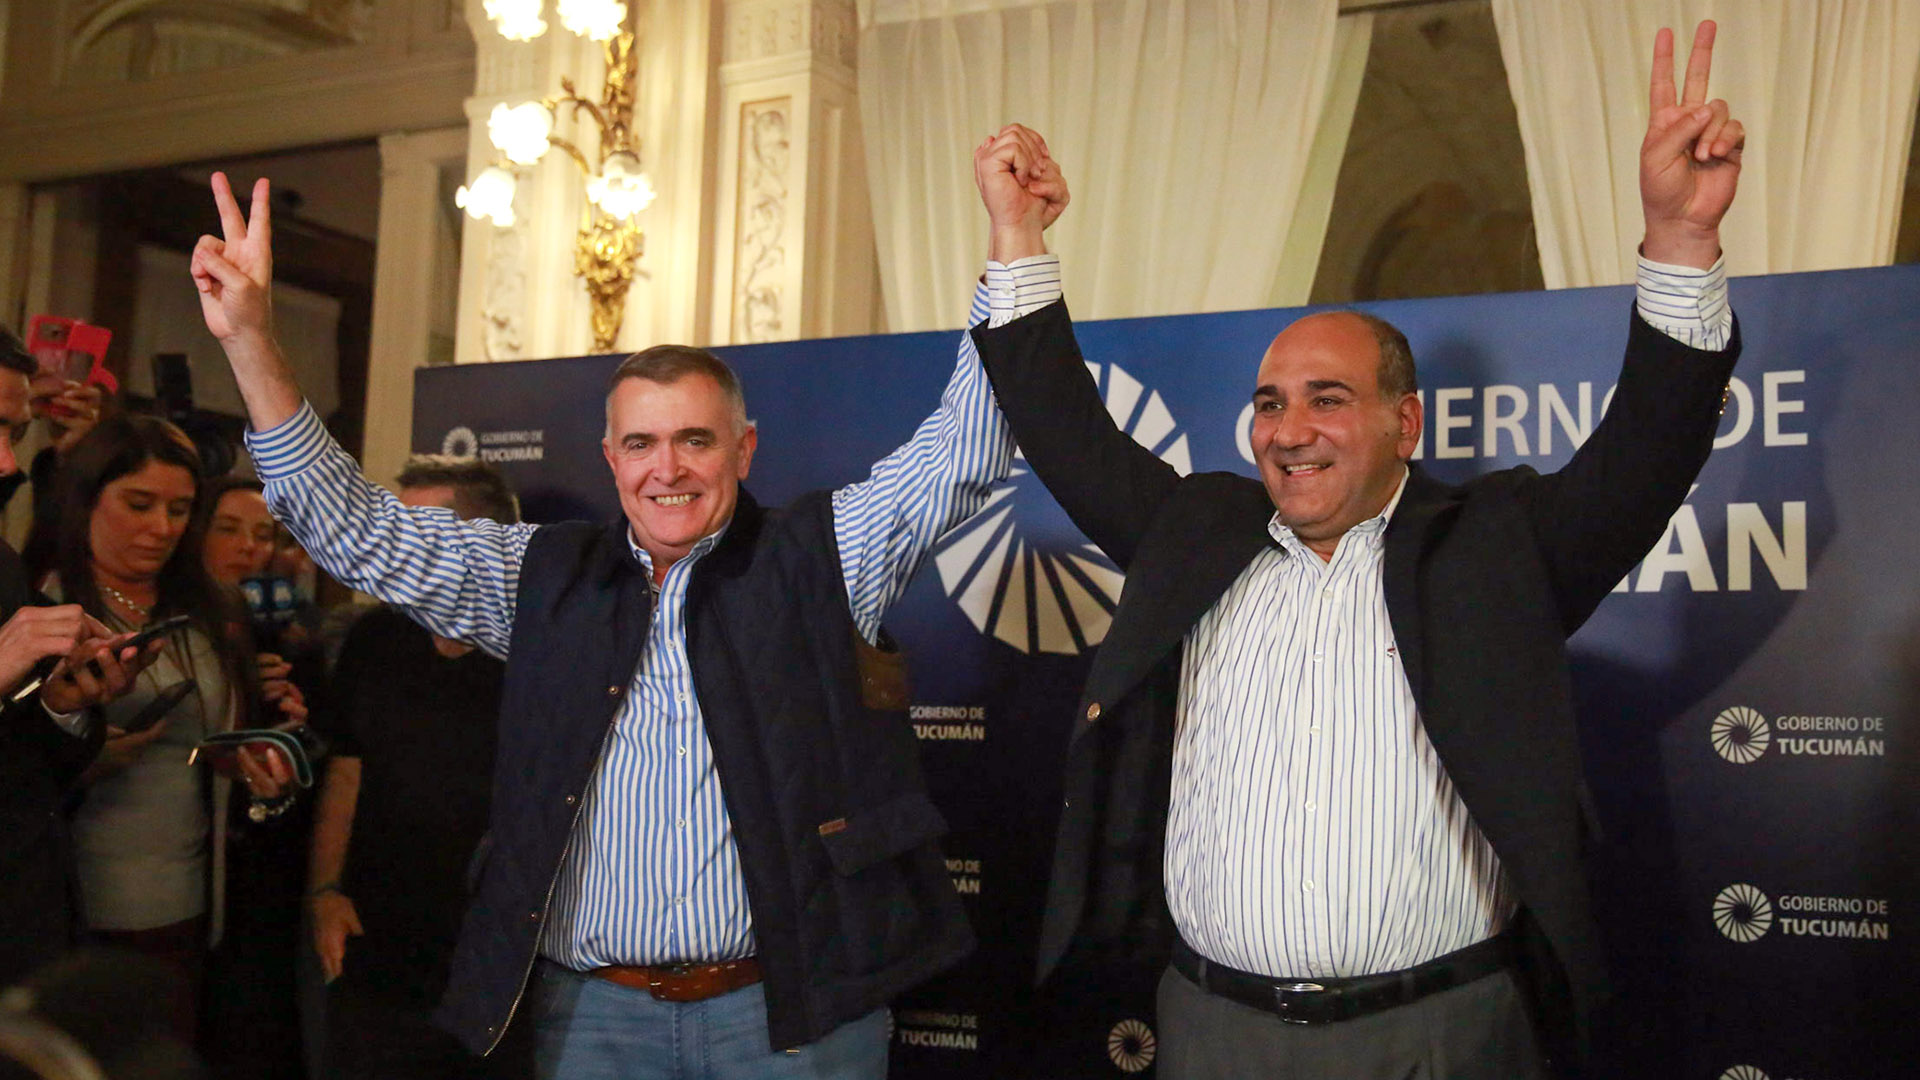 La Junta Electoral de Tucumán decidió suspender las elecciones en todas las categorías (Télam)